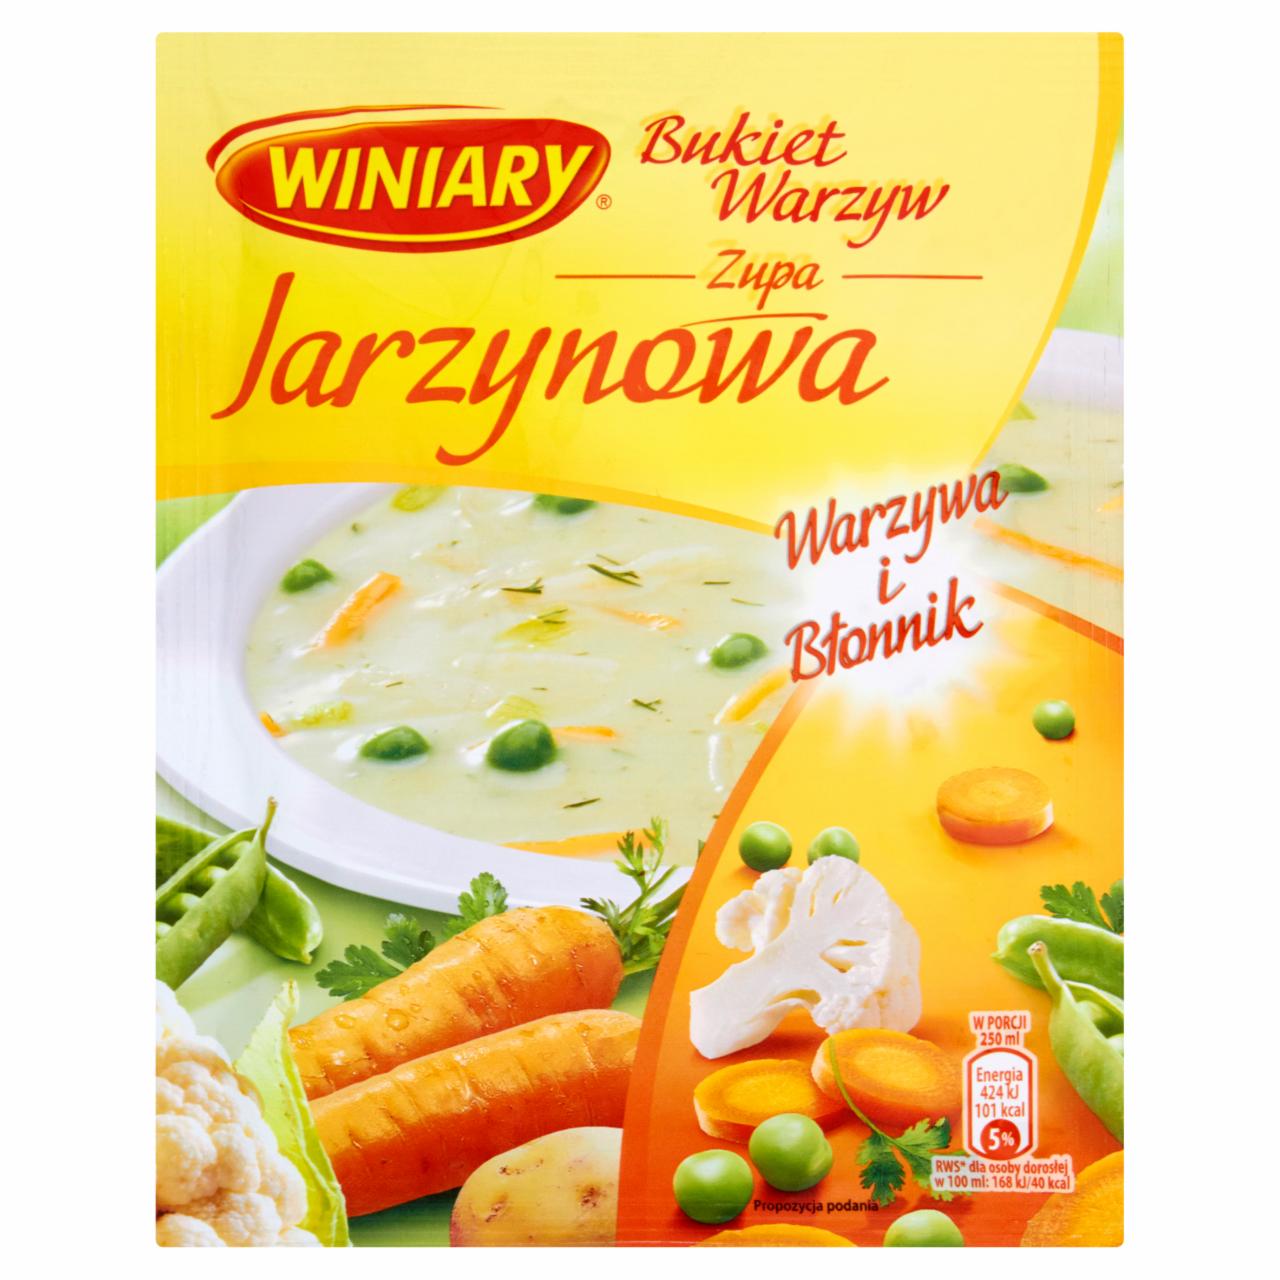 Zdjęcia - Winiary Bukiet Warzyw Zupa jarzynowa 55 g